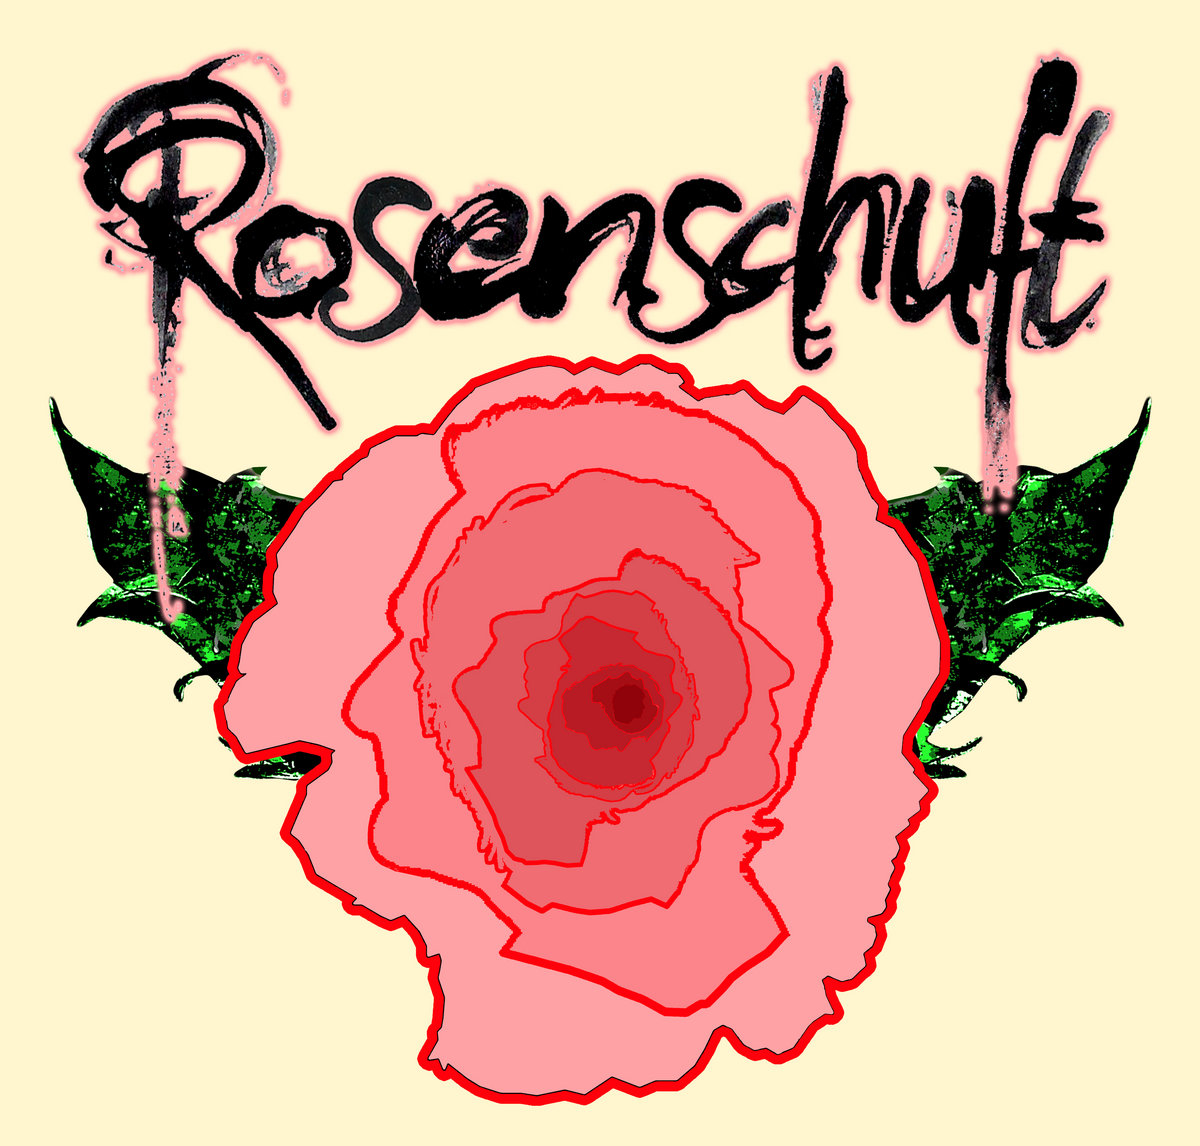 ROSENSCHUFT/BERNIEDUFT